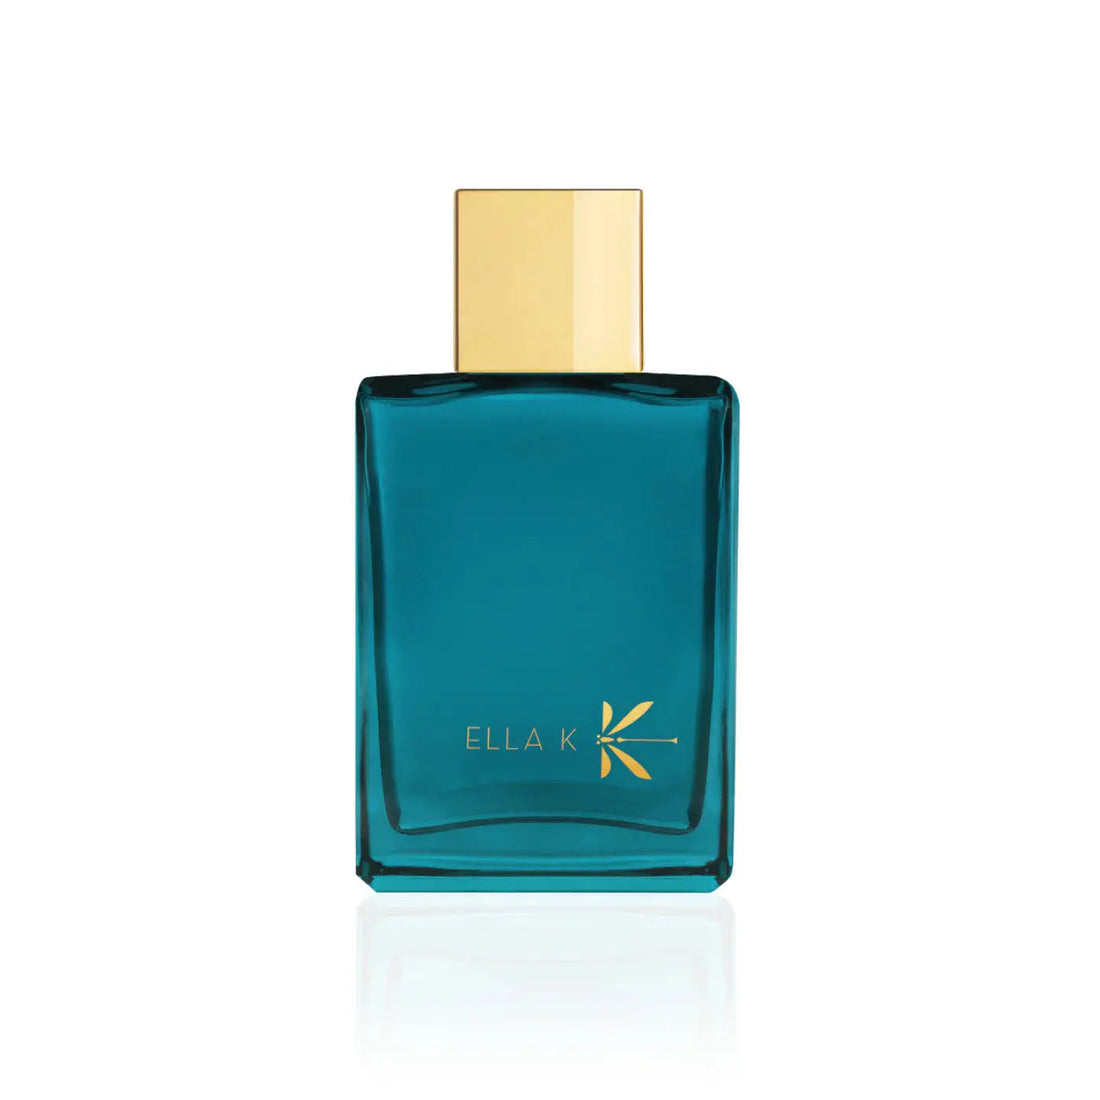 Ella k parfums Orchid K - 100 ml eau de parfum